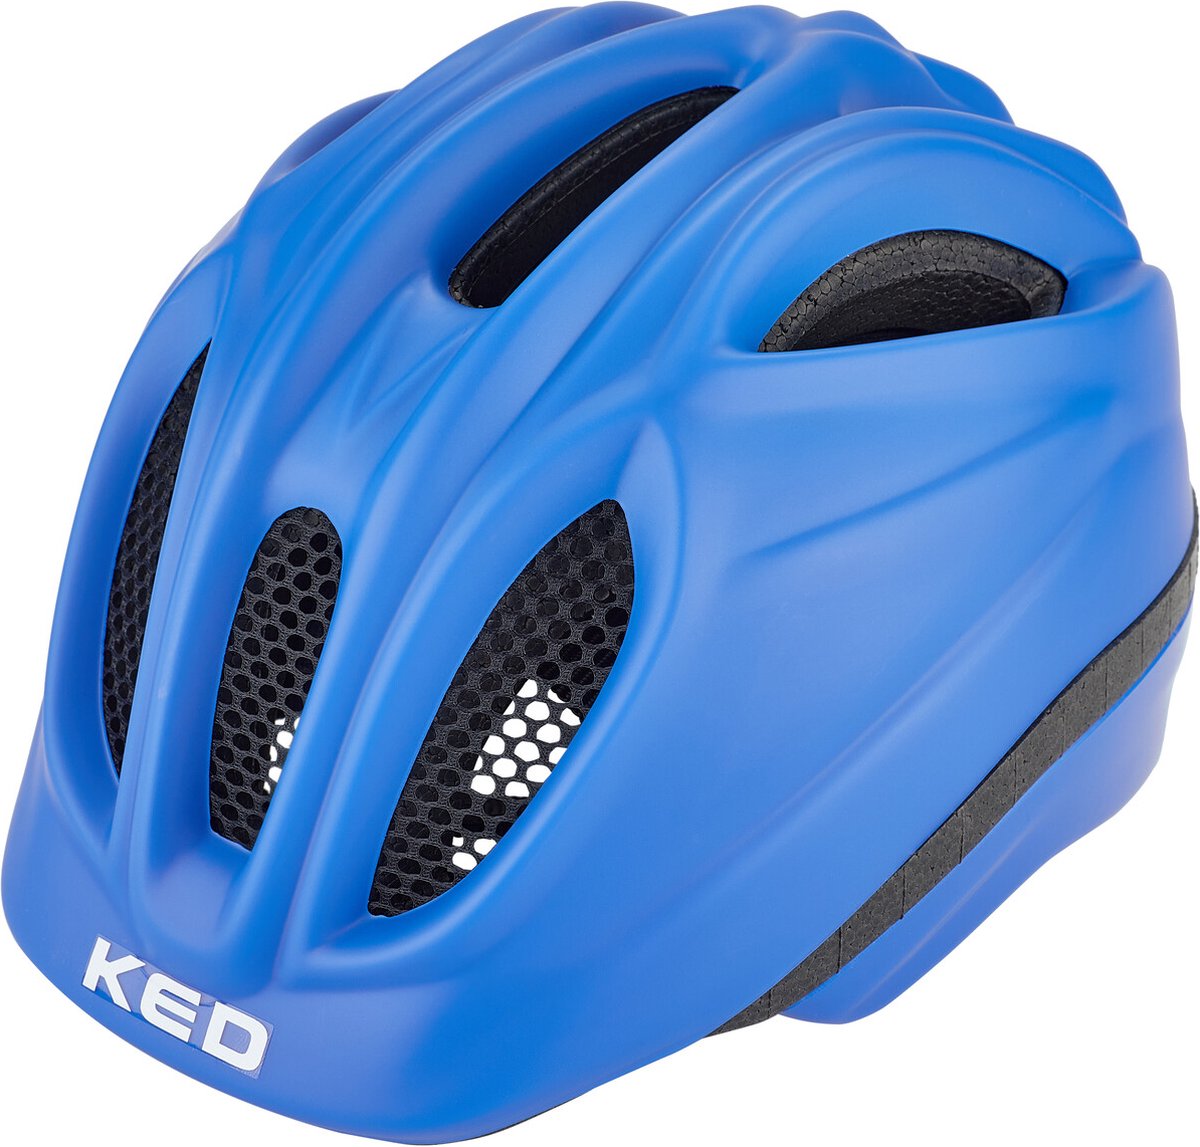 KED Fahrradhelm Meggy II Blue matt Produkte mit kostenloser Lieferung  Werbeartikel Großartige Qualität lynbrookoptical.com.au